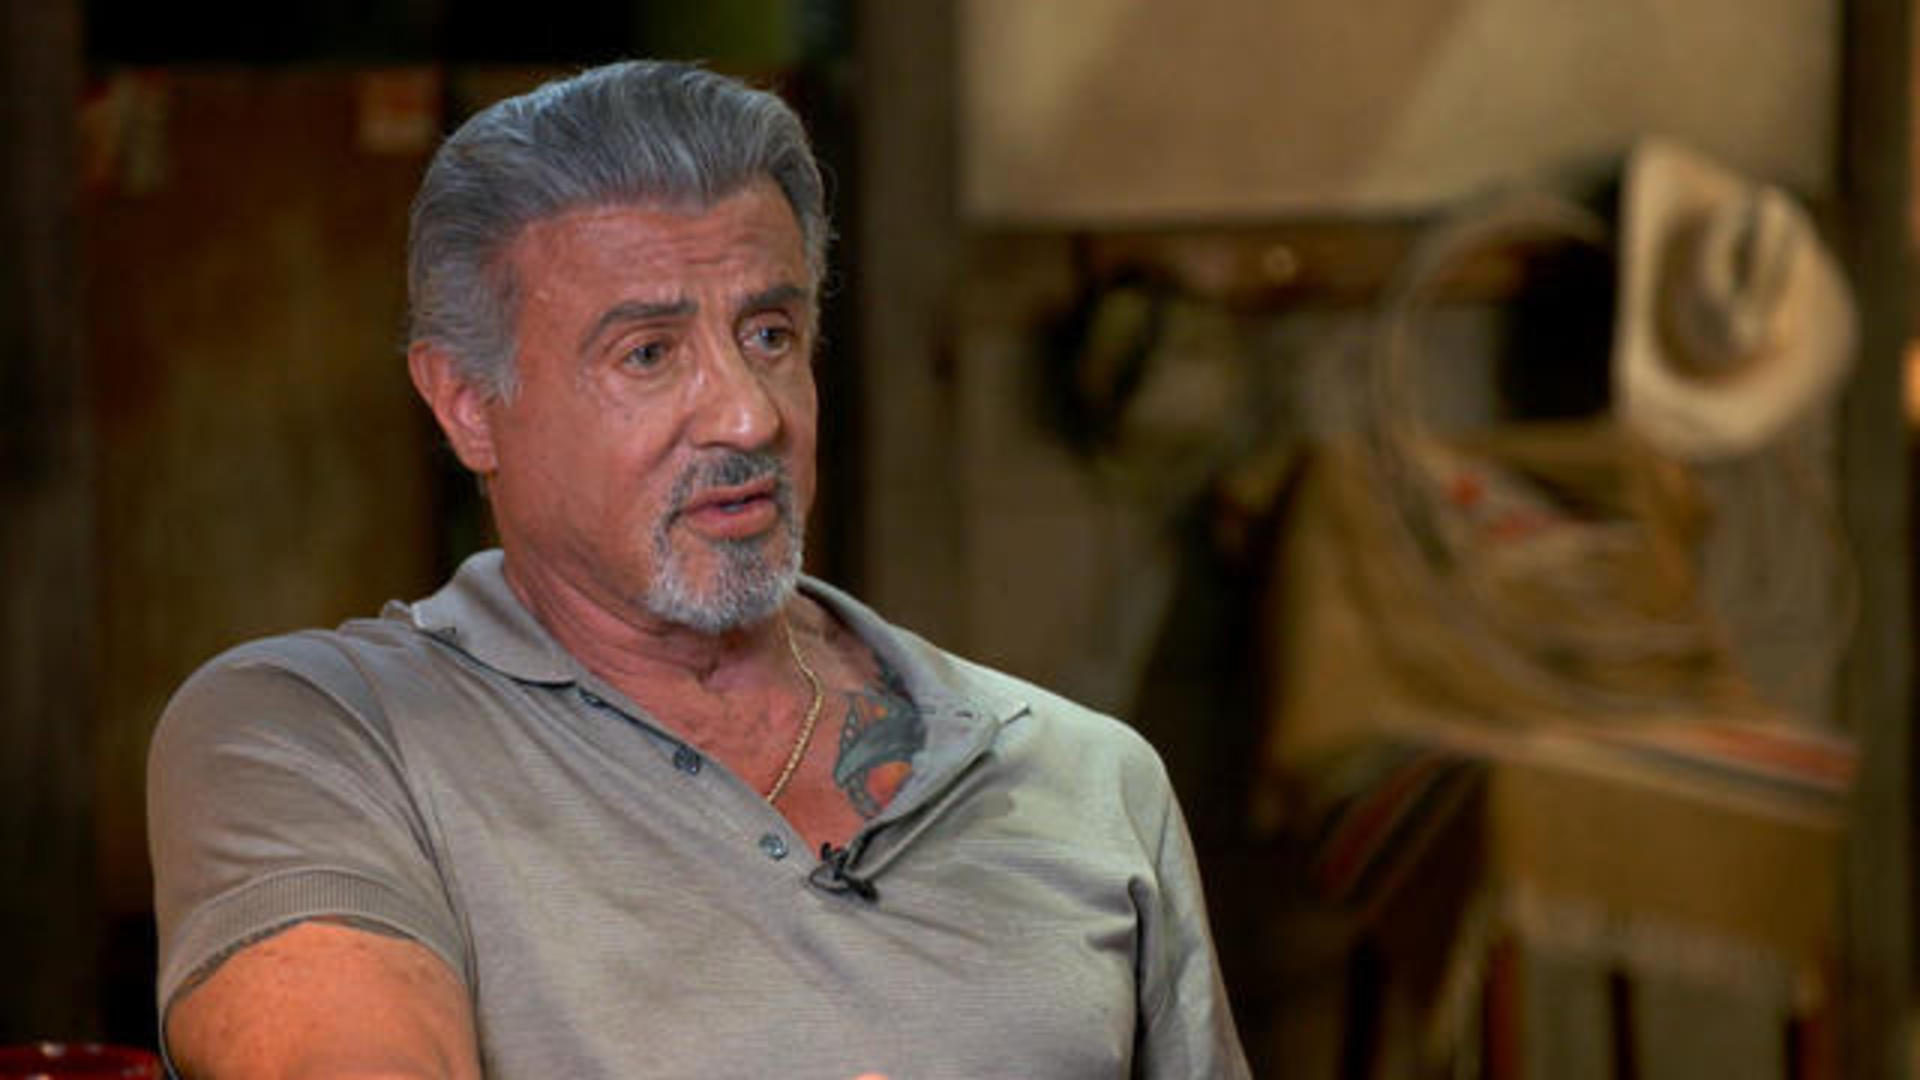 Sylvester Stallone wearing a gray polo shirt